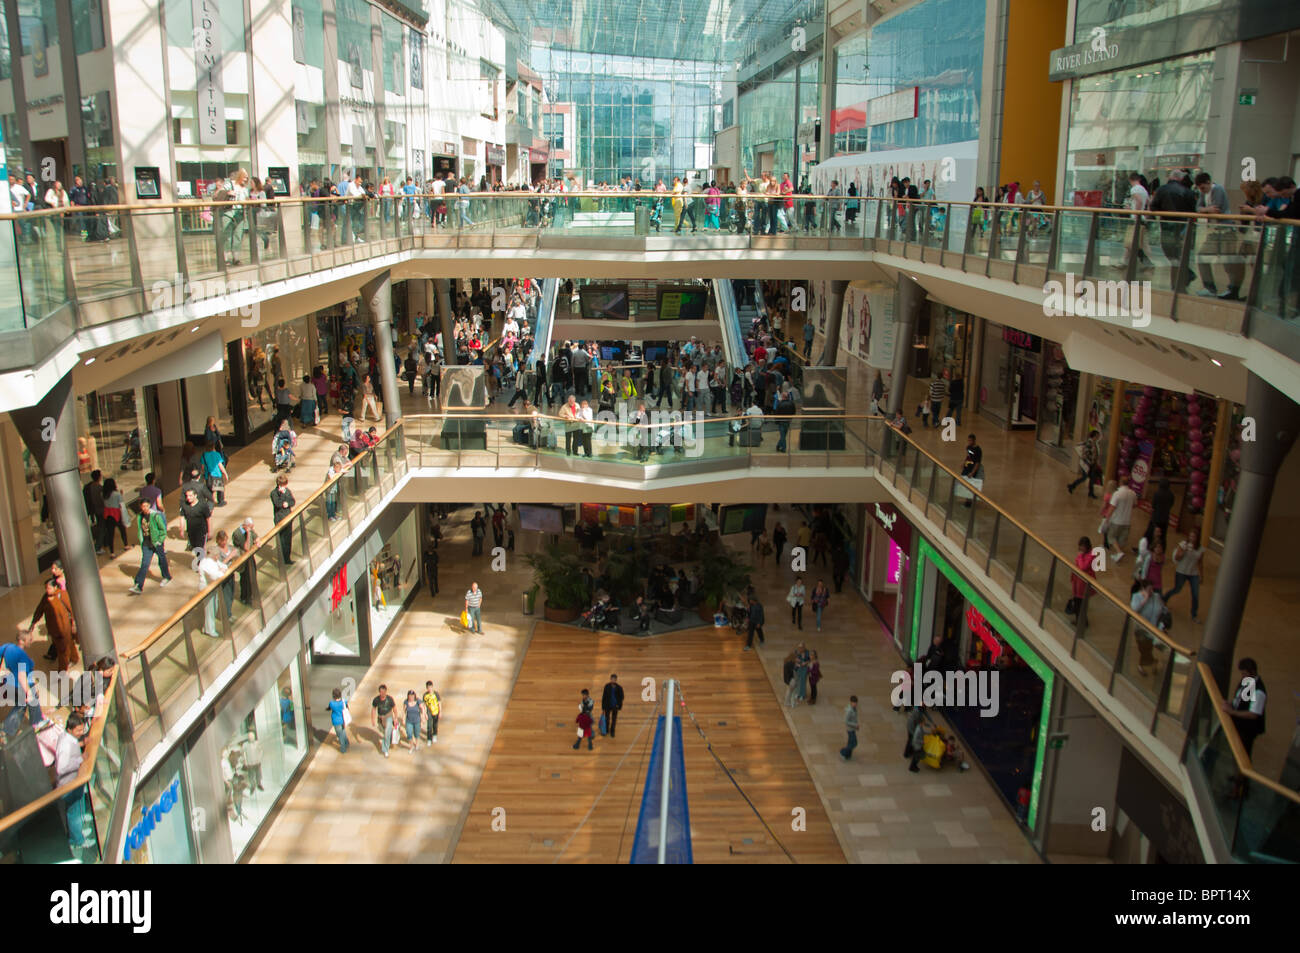 Birmingham Bullring Shopping Mall Interior, UK Stock Photo - Alamy